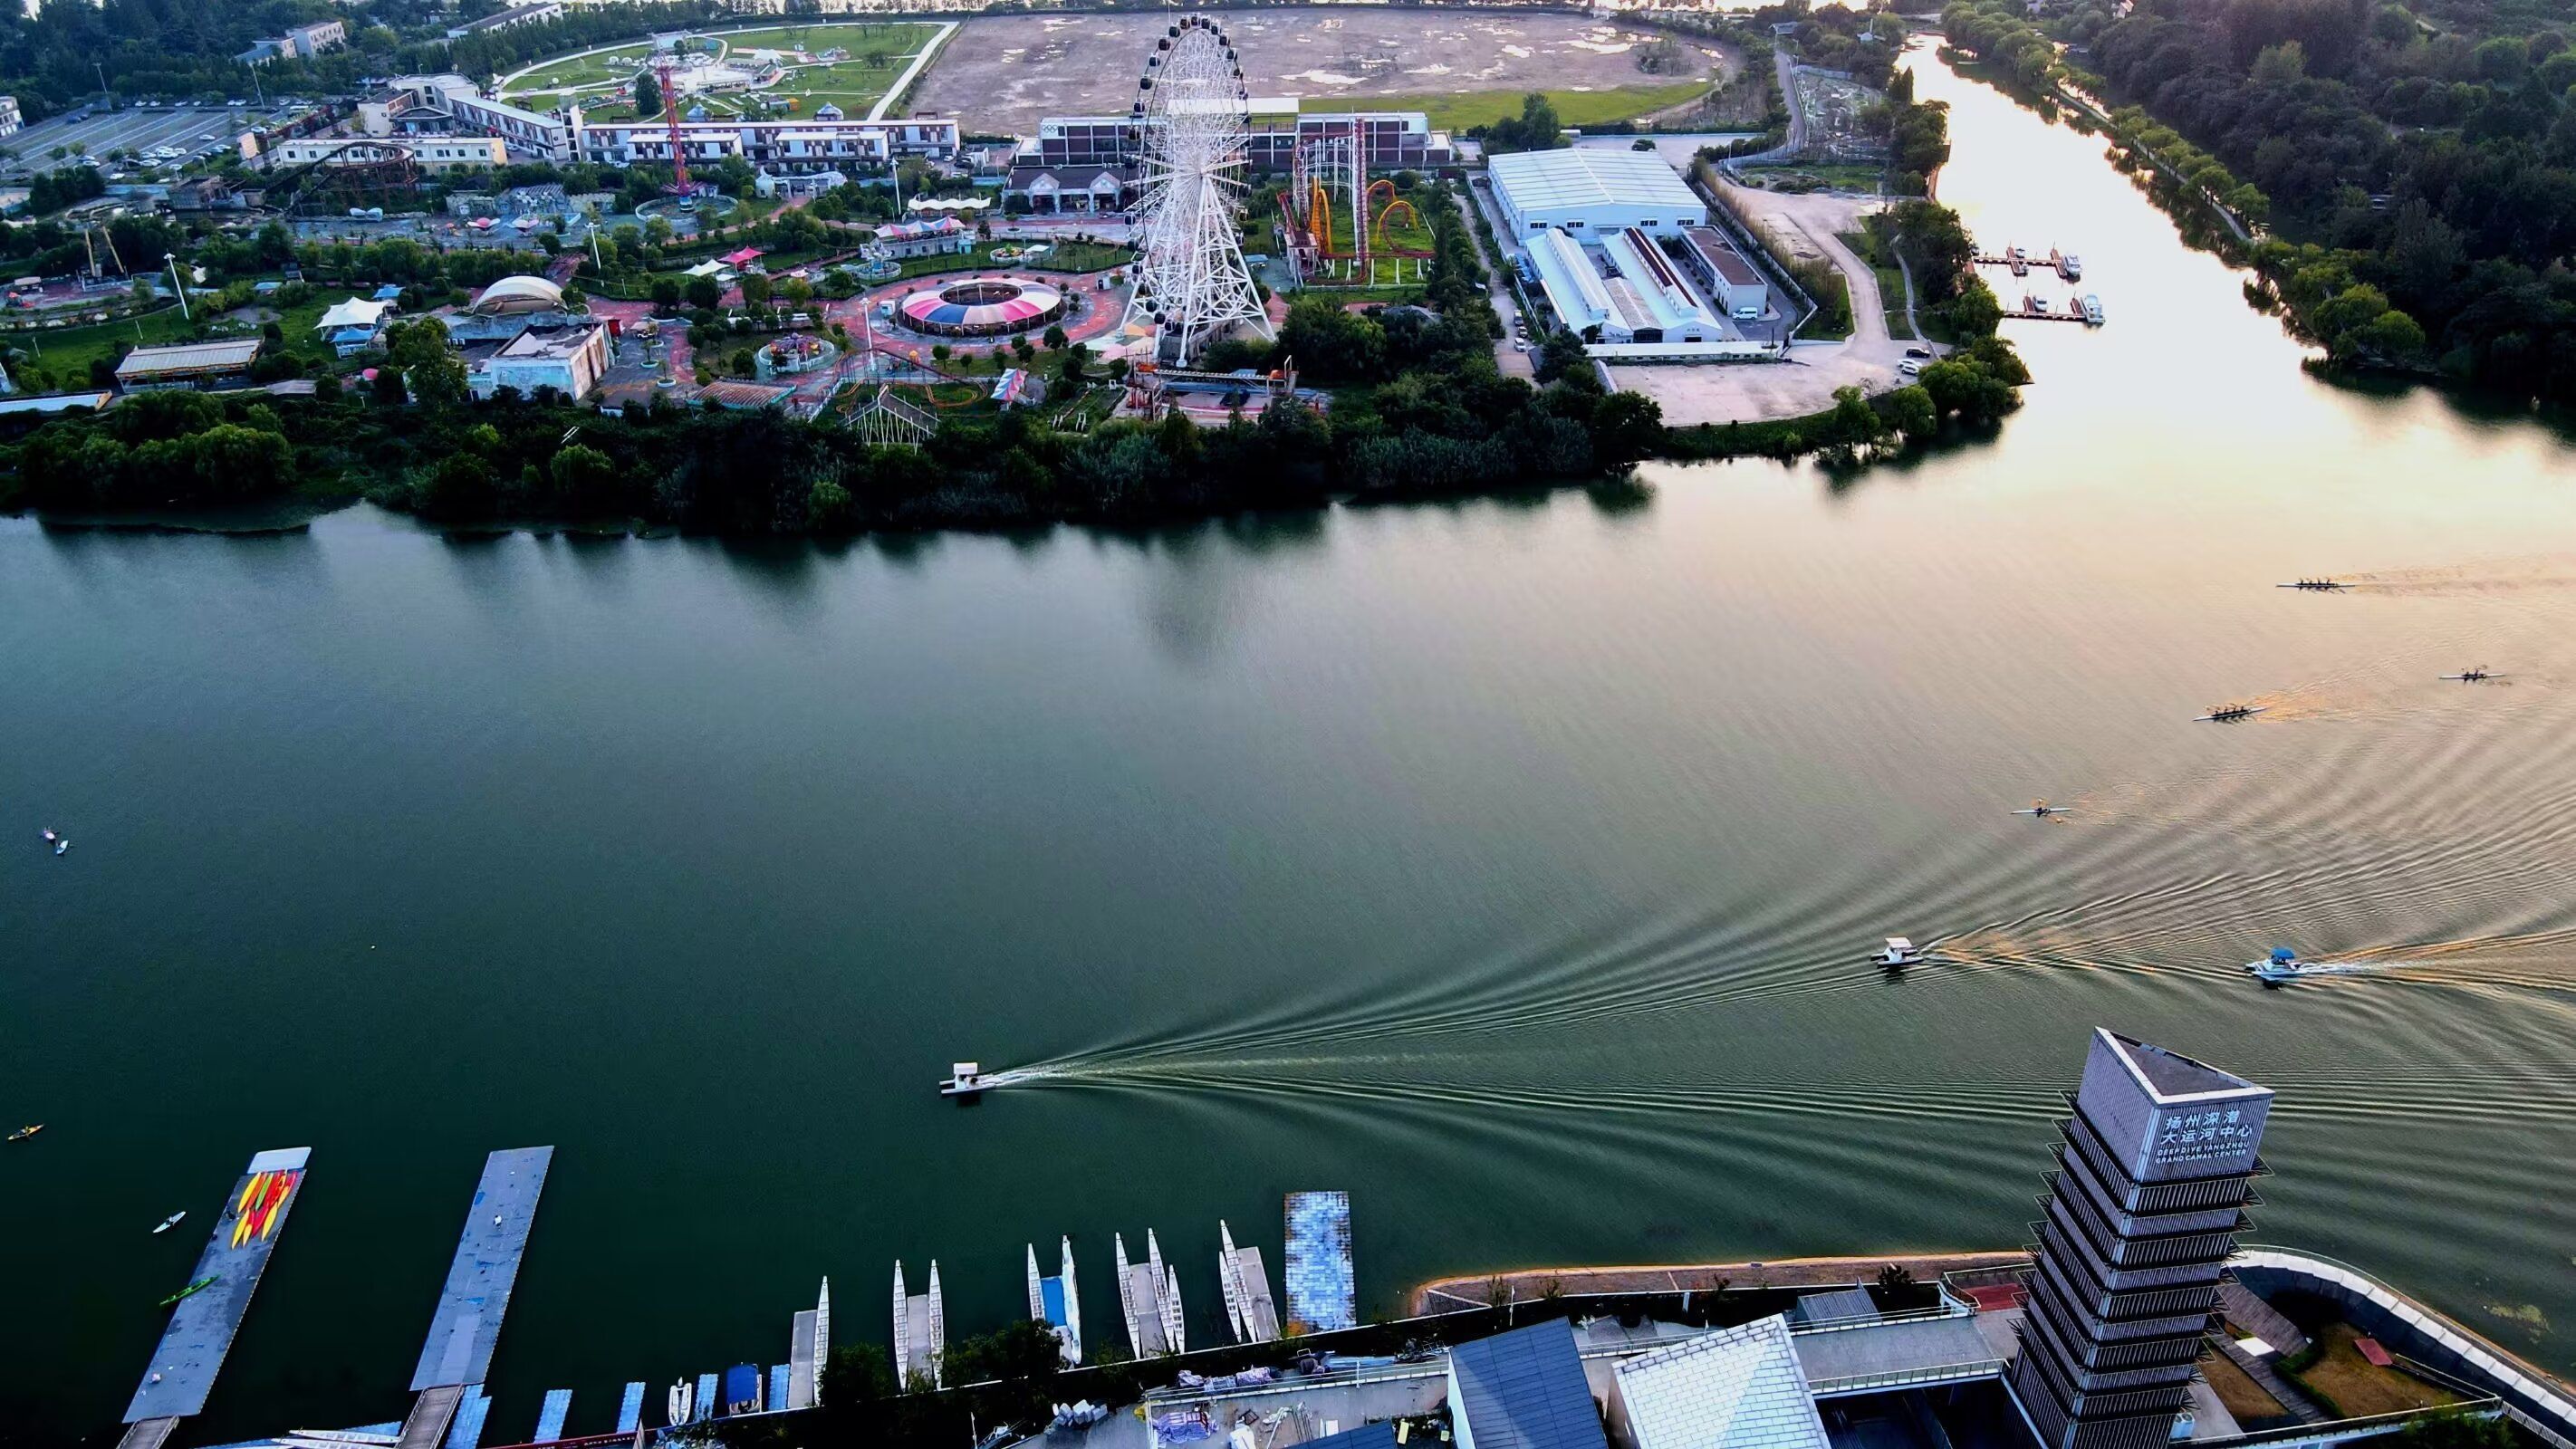 大运河扬州段，船只来来往往，在河面划出一道道优美的弧线。拍摄者：沙光明